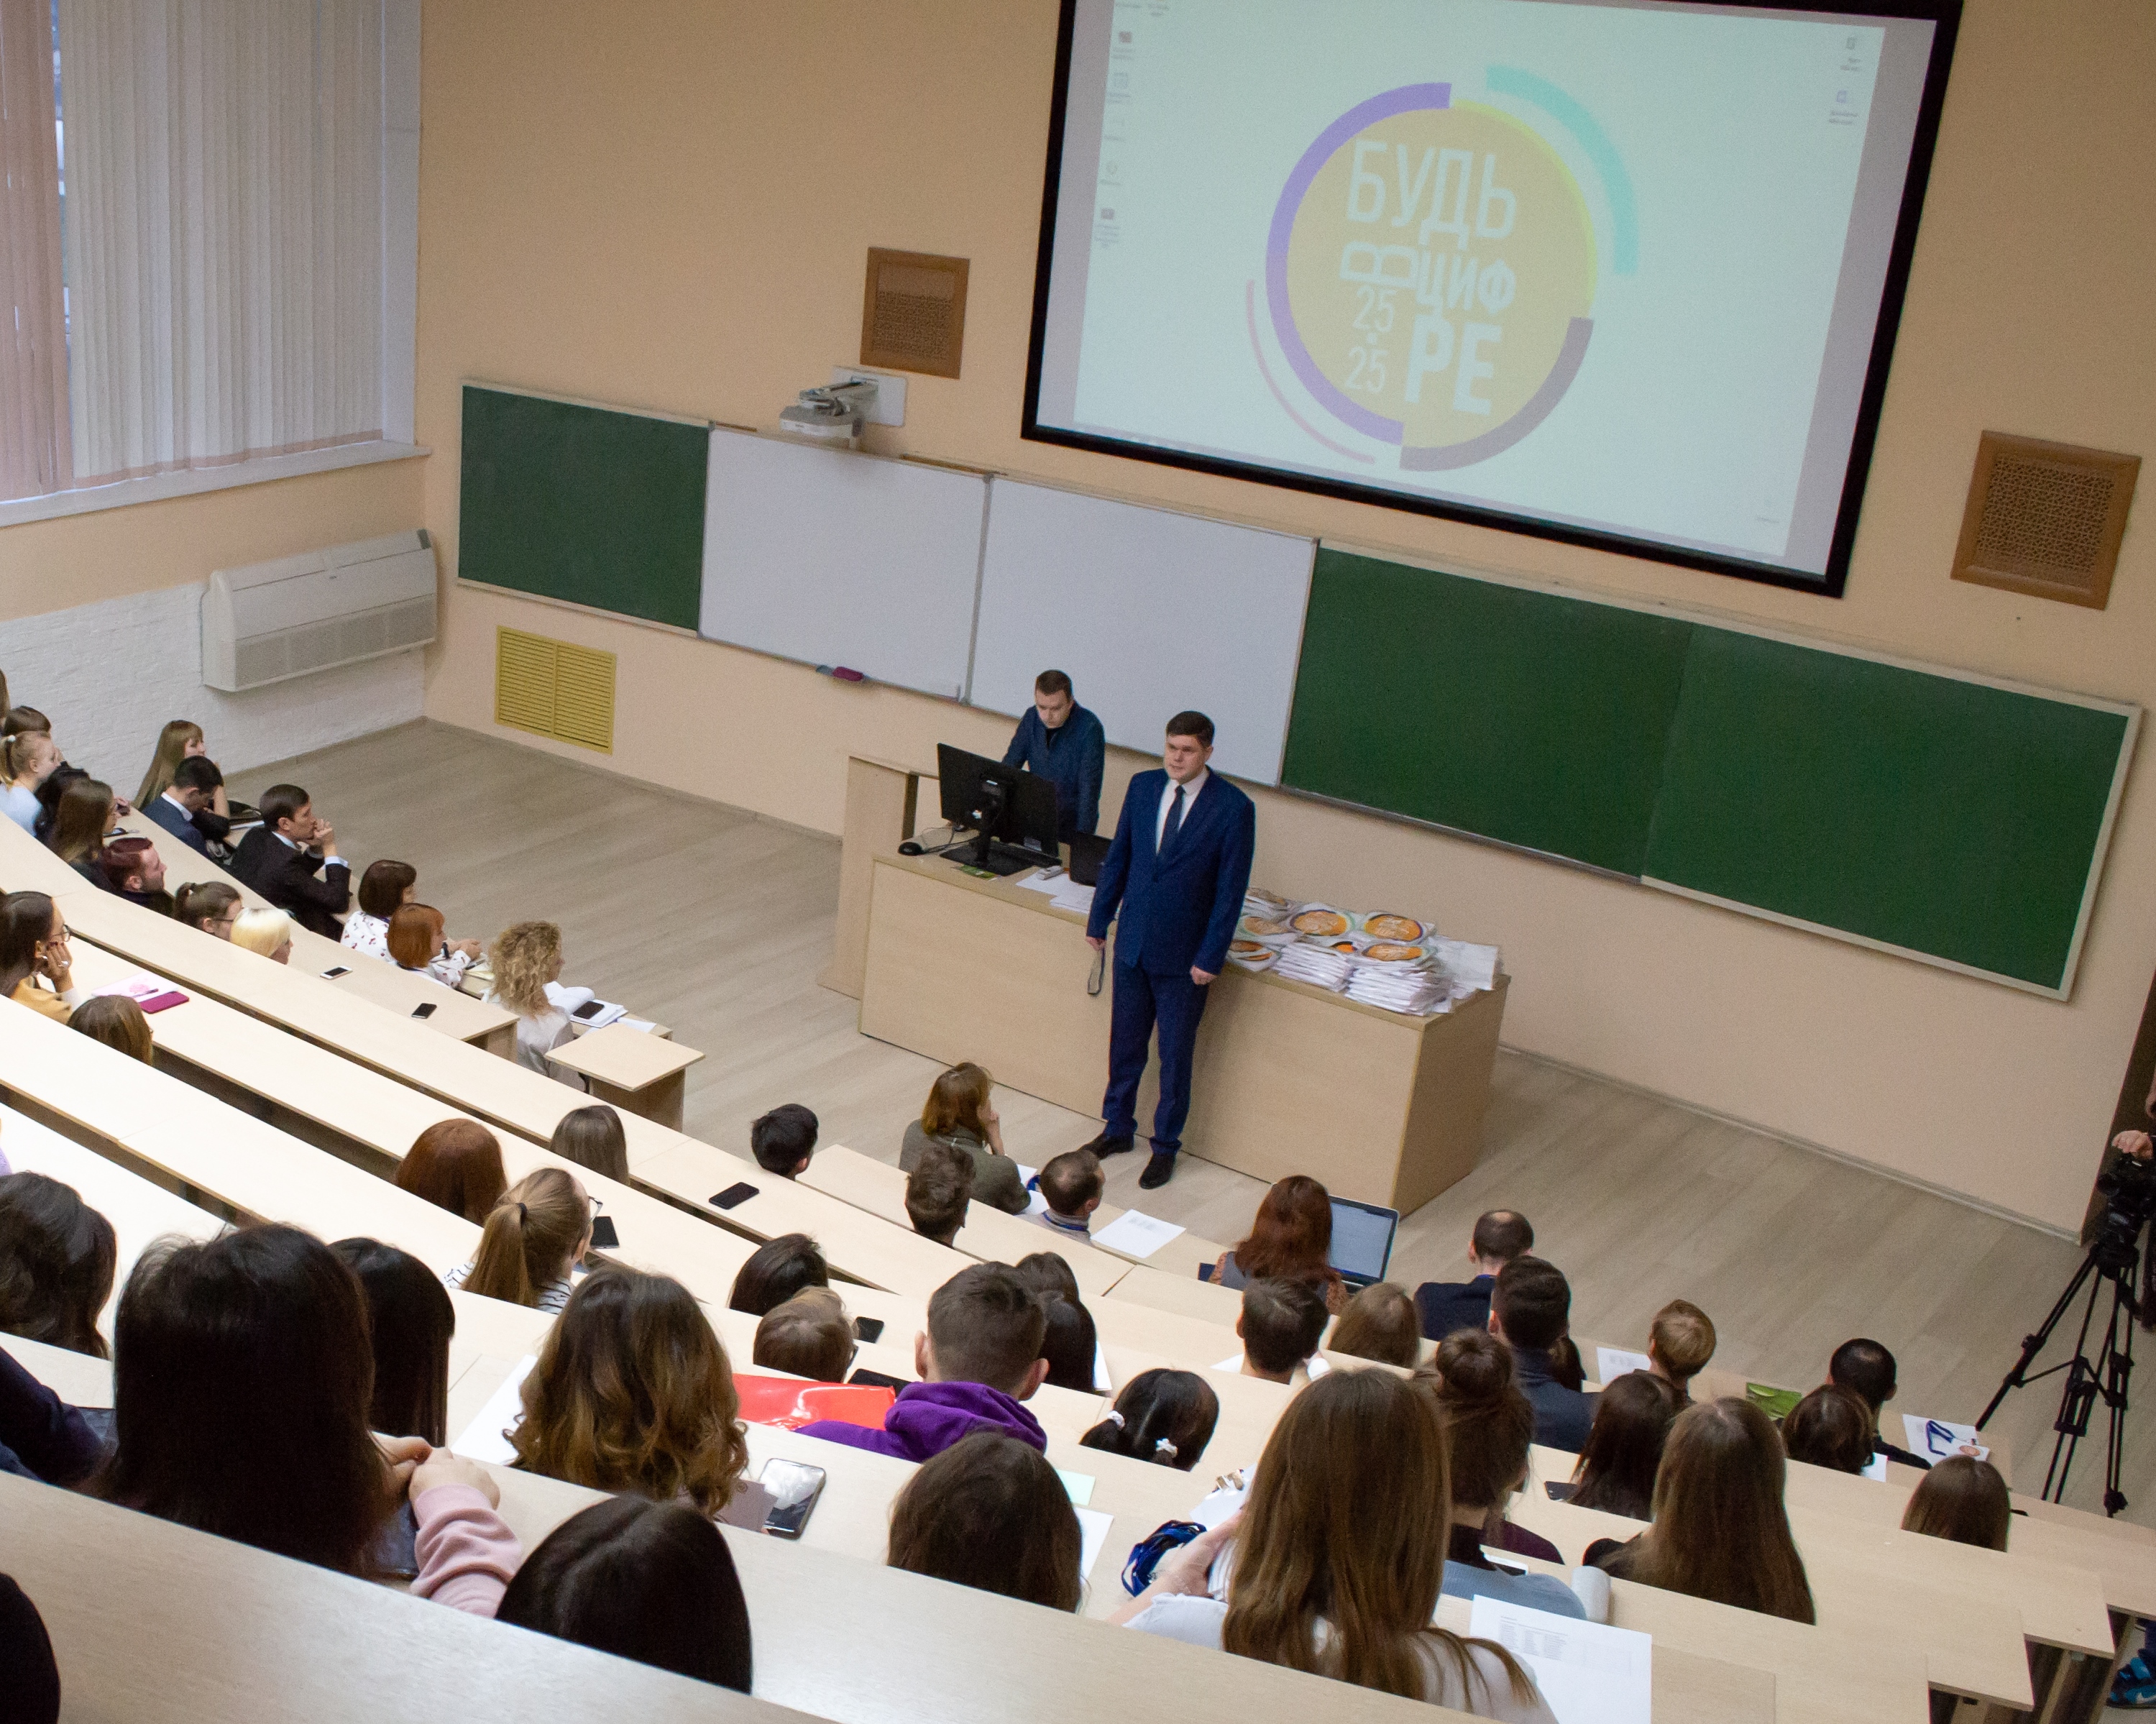 25 ноября 2019 года в стенах УлГПУ стартовал образовательный интенсив «Будь в цифре 25.25».